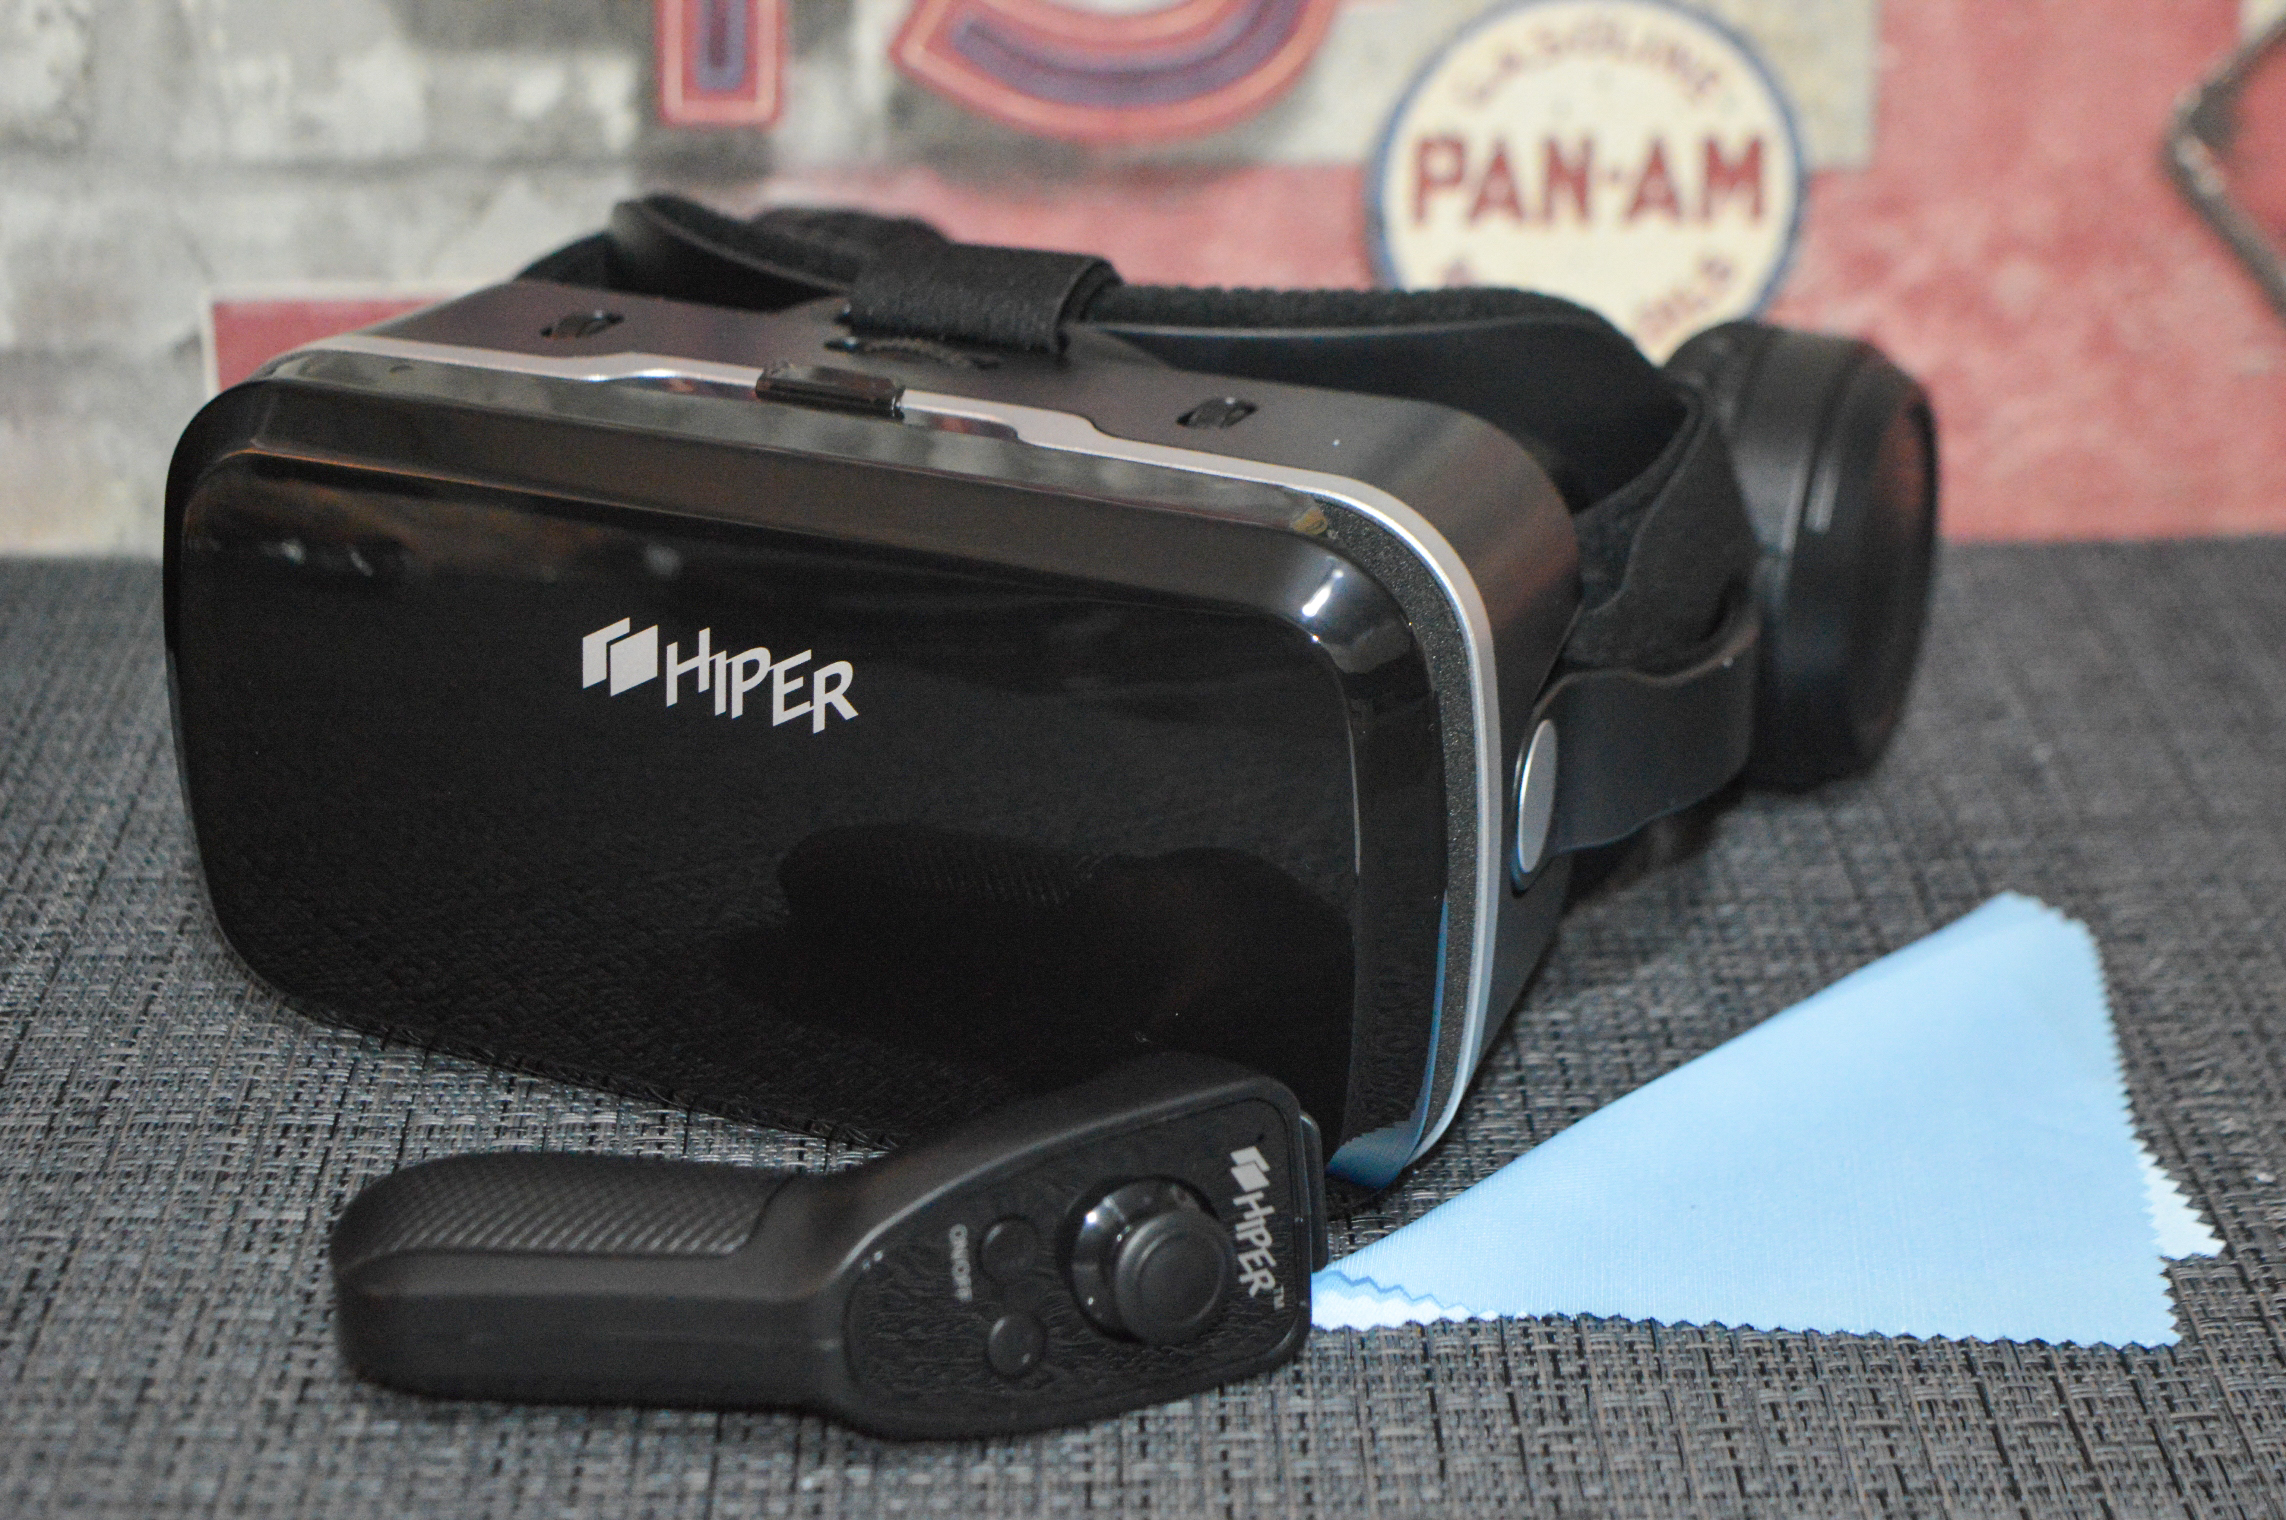 Vr очков hiper. Очки виртуальной реальности Hiper VR. Очки Hyper VR Max. Очки виртуальной реальности Hiper VR Max (VR Max). Очки виртуальной реальности Hiper VR Max обзор.